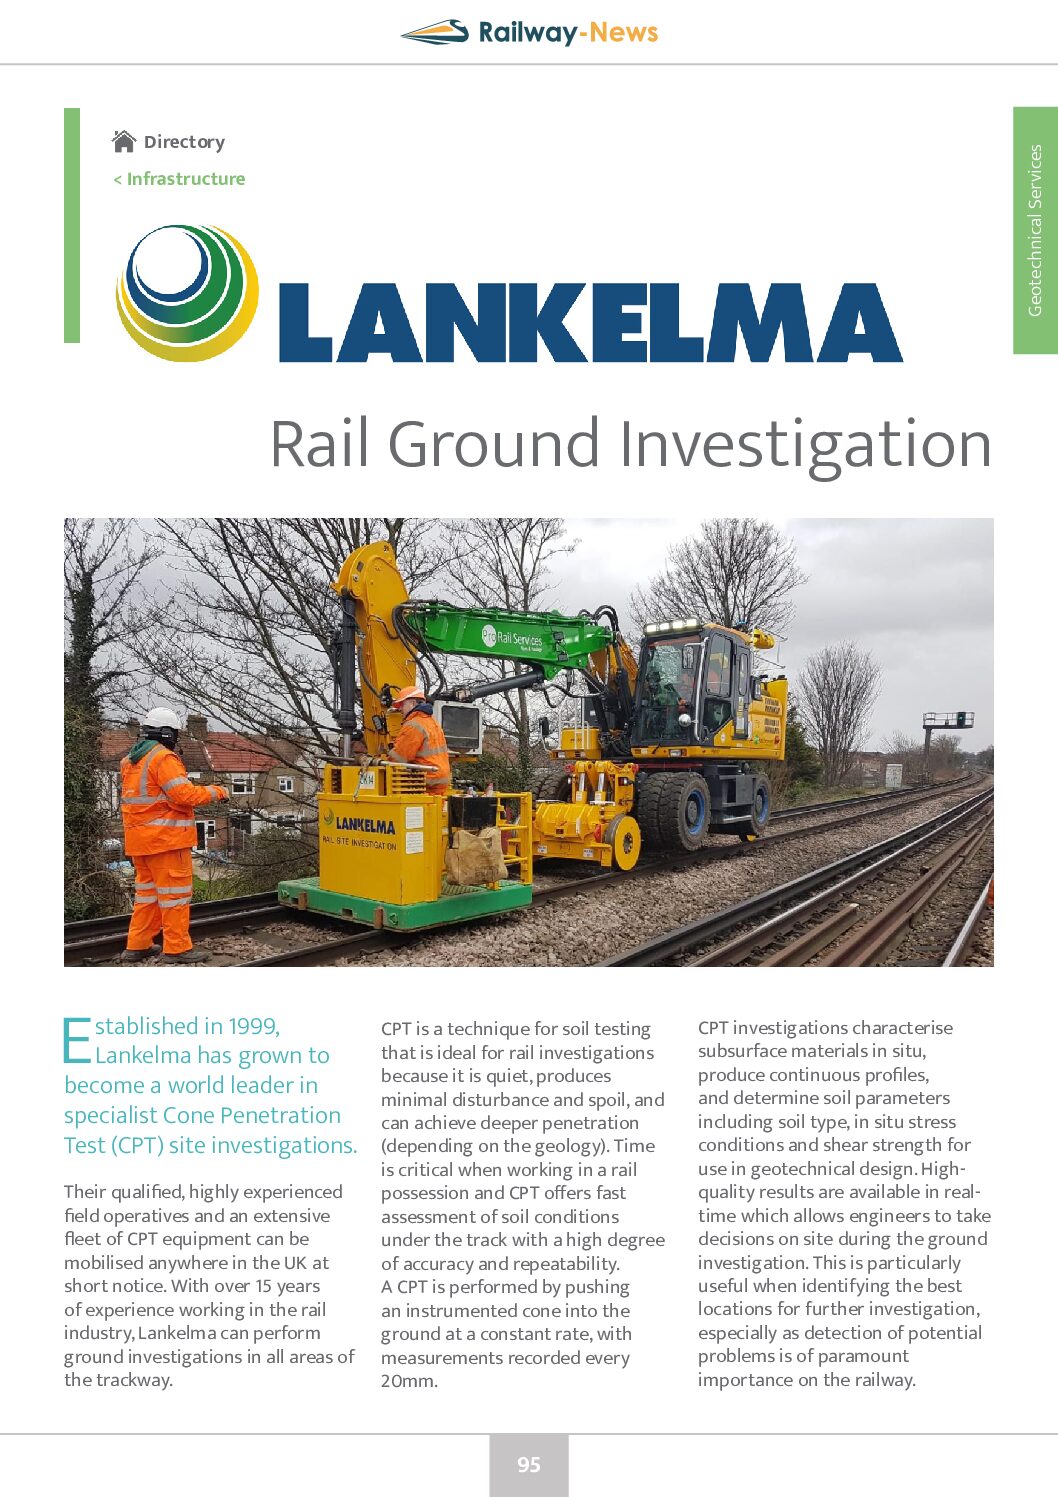 Lankelma – Rail Ground Investigation